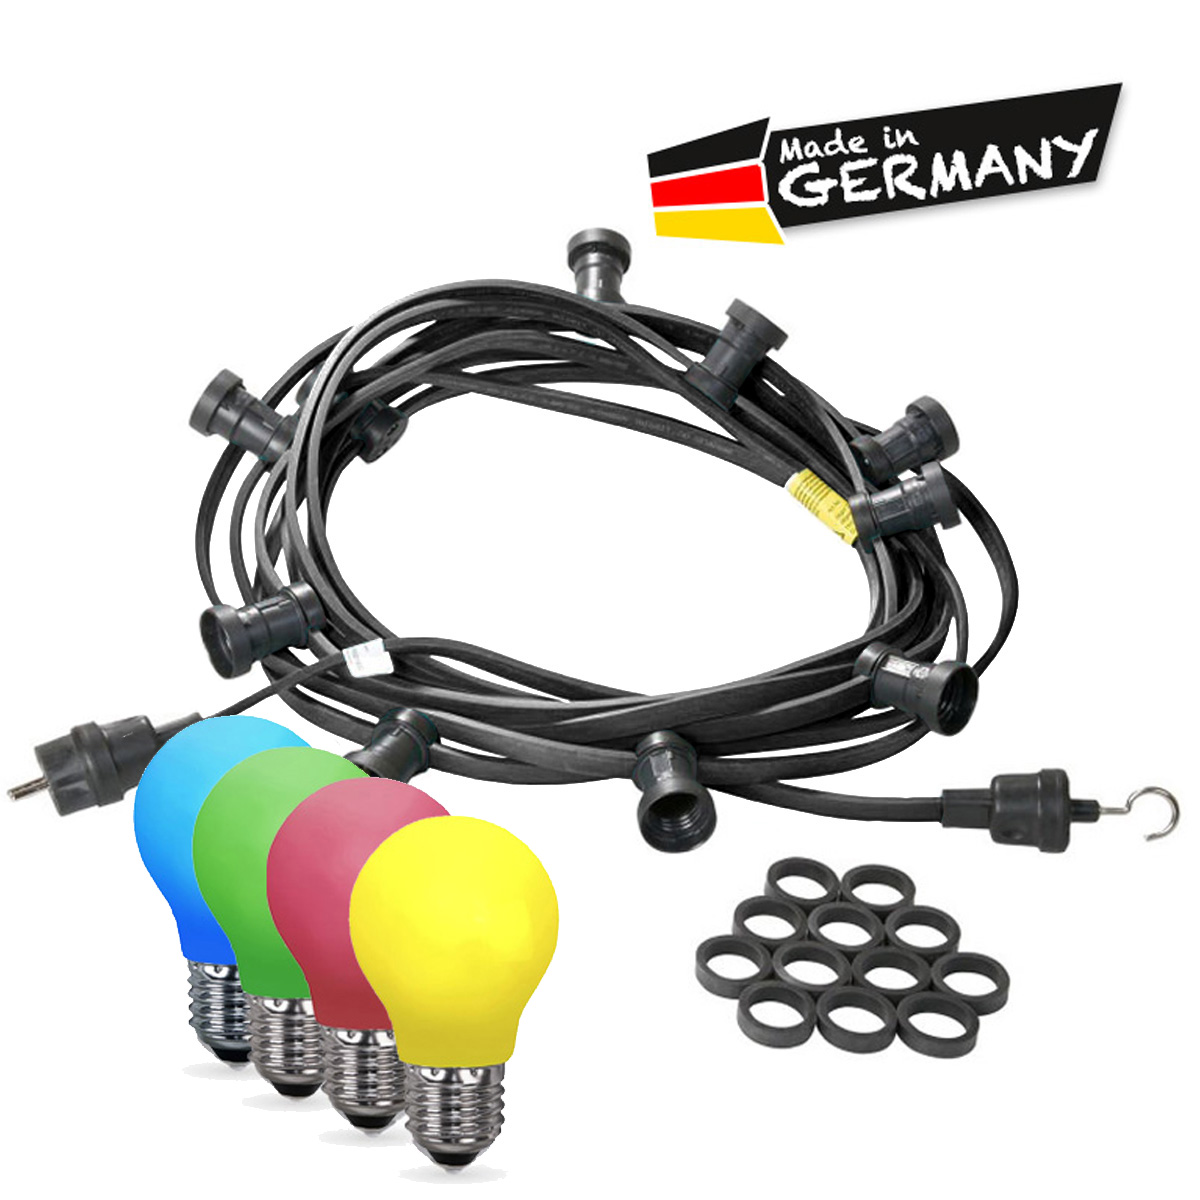 Illu-/Partylichterkette 20m - Außenlichterkette - Made in Germany - 40 x bunte LED Tropfenlampe